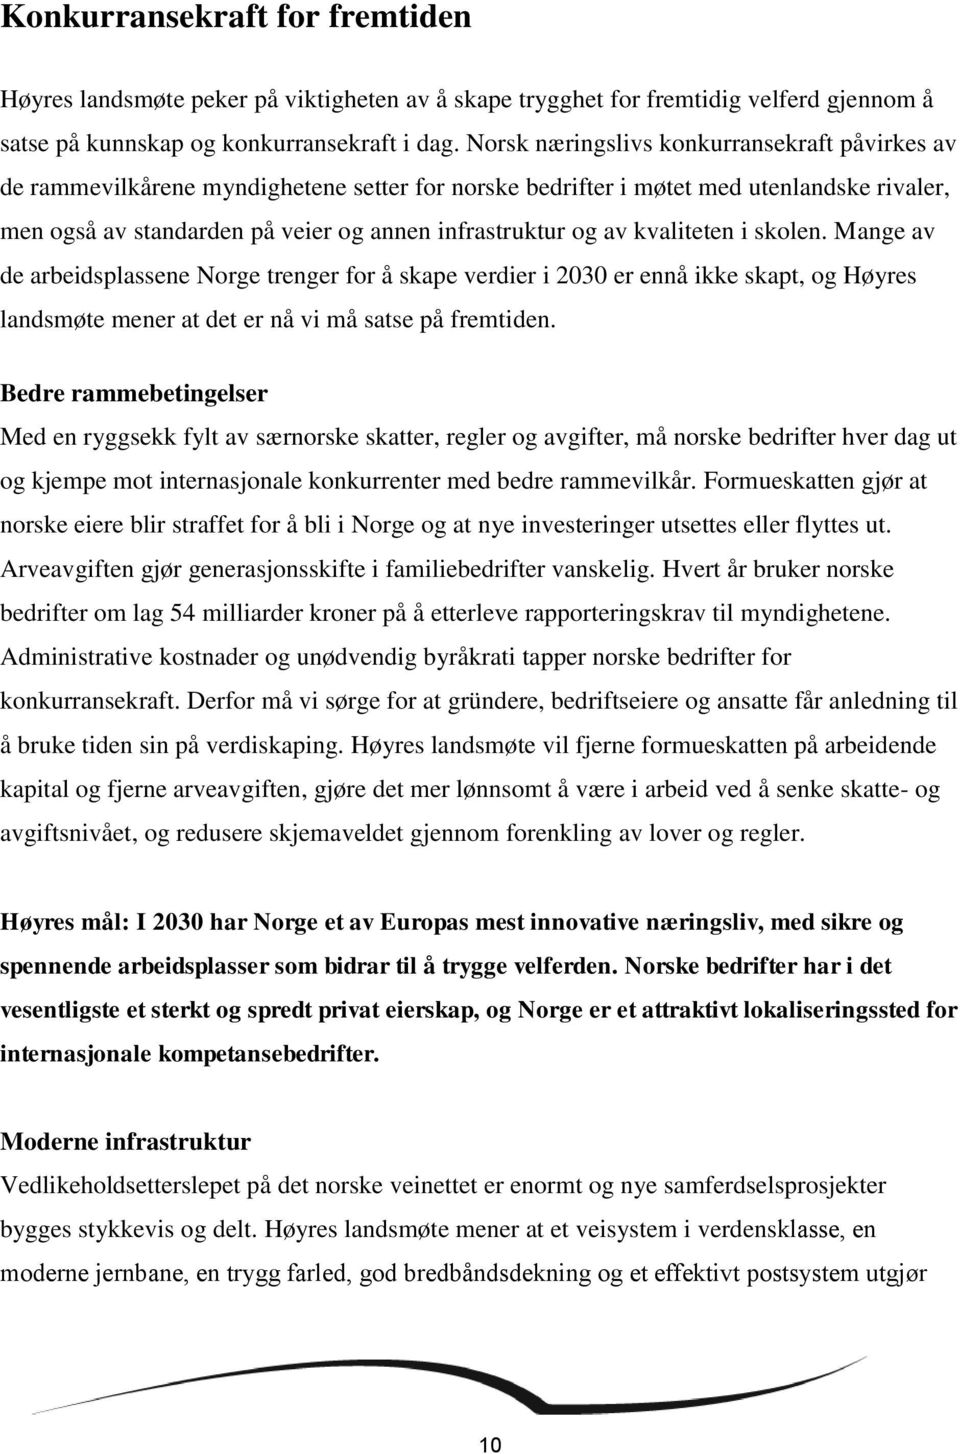 kvaliteten i skolen. Mange av de arbeidsplassene Norge trenger for å skape verdier i 2030 er ennå ikke skapt, og Høyres landsmøte mener at det er nå vi må satse på fremtiden.